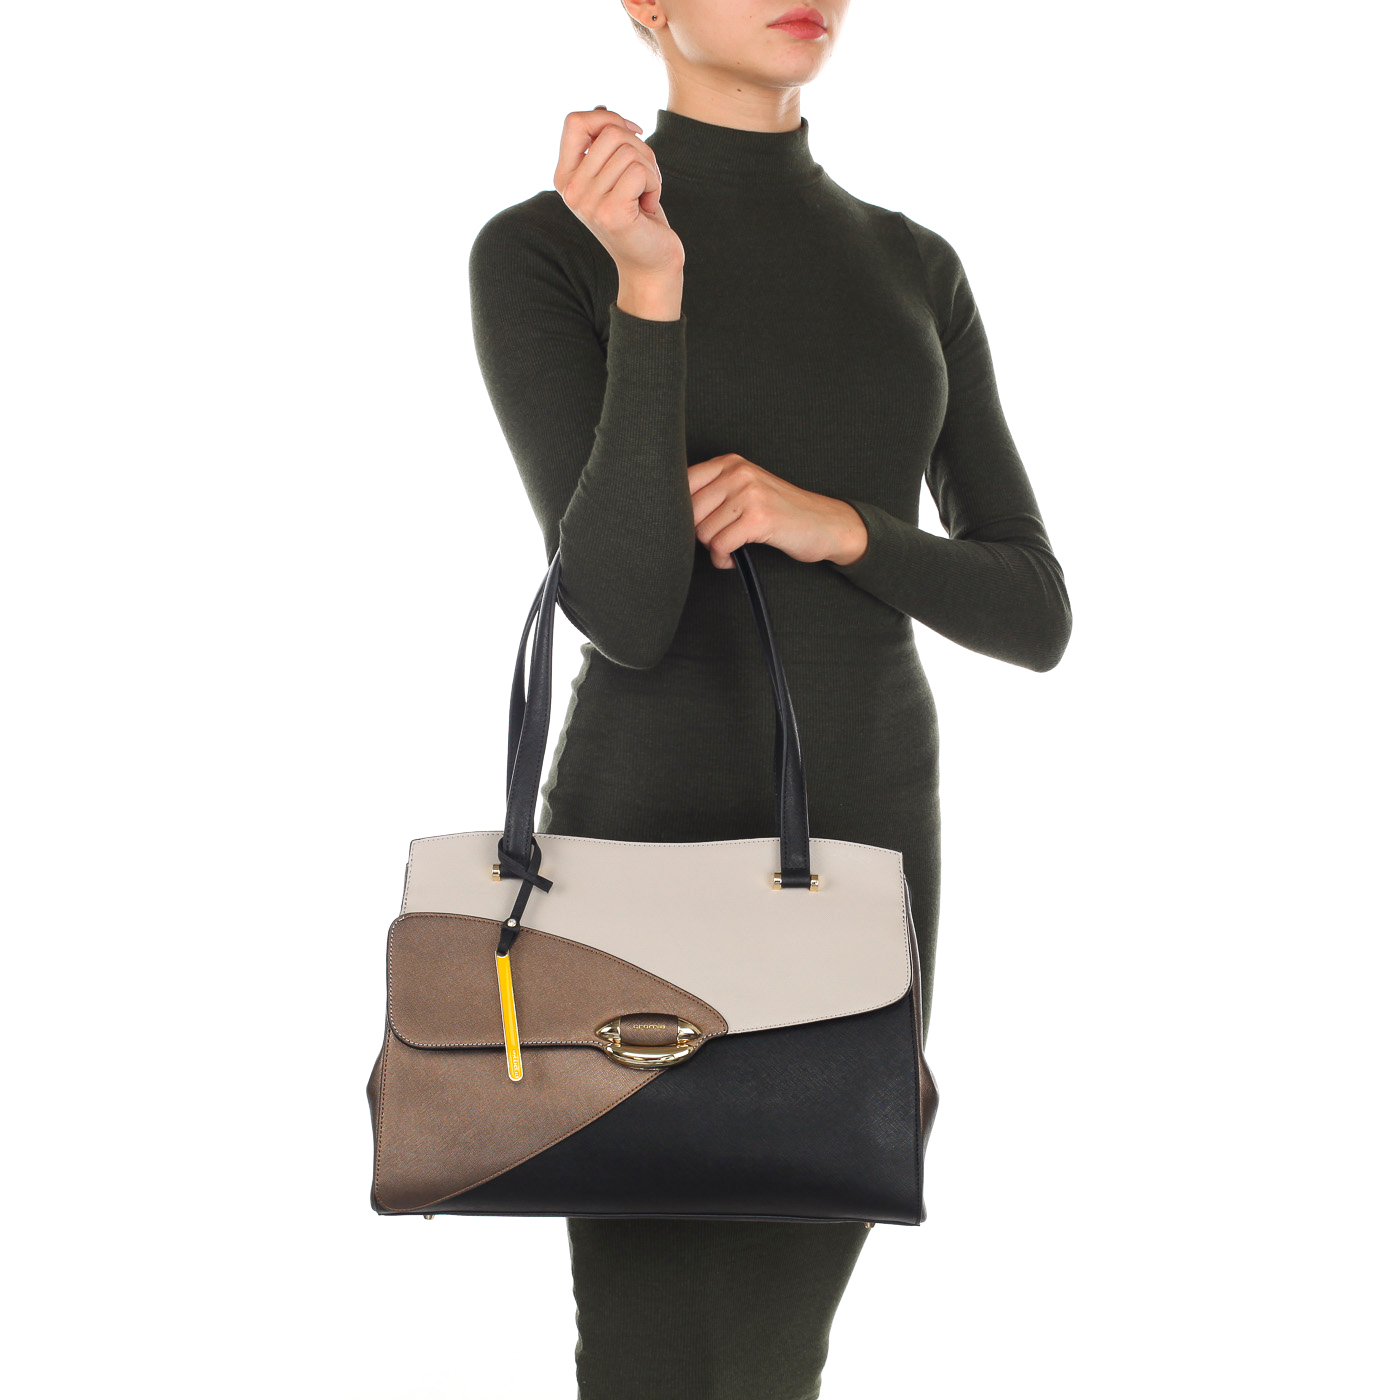 Вместительная сумка из сафьяновой кожи с двумя отделами Cromia Luxury